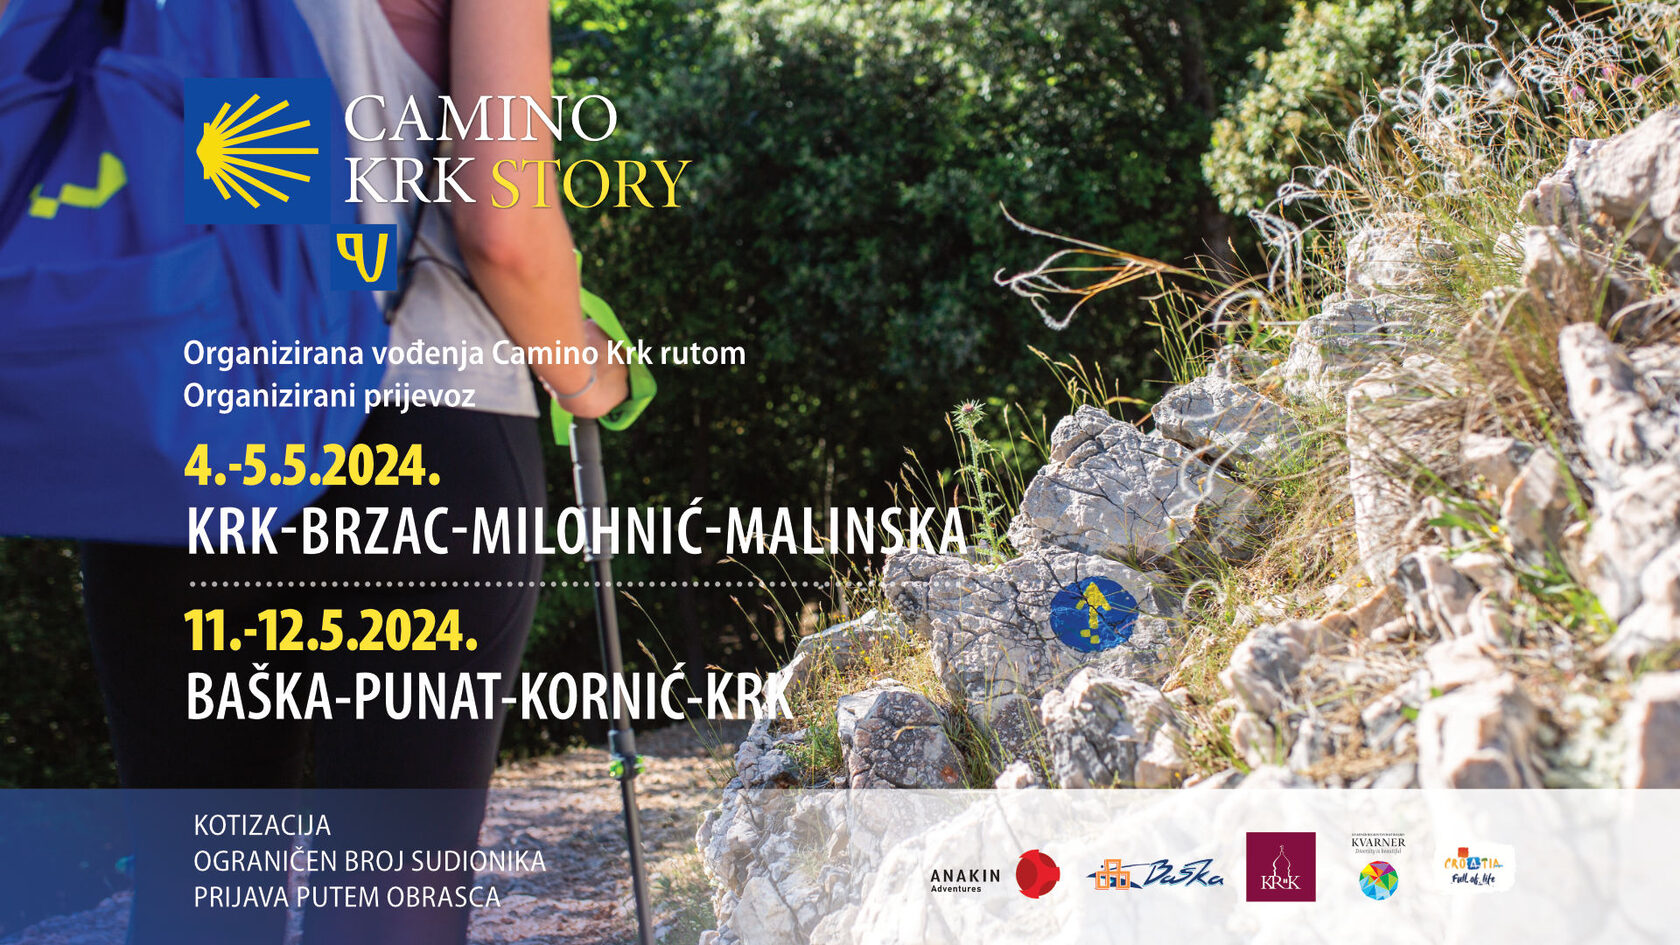 Camino Krk Story - Avtokampi.si